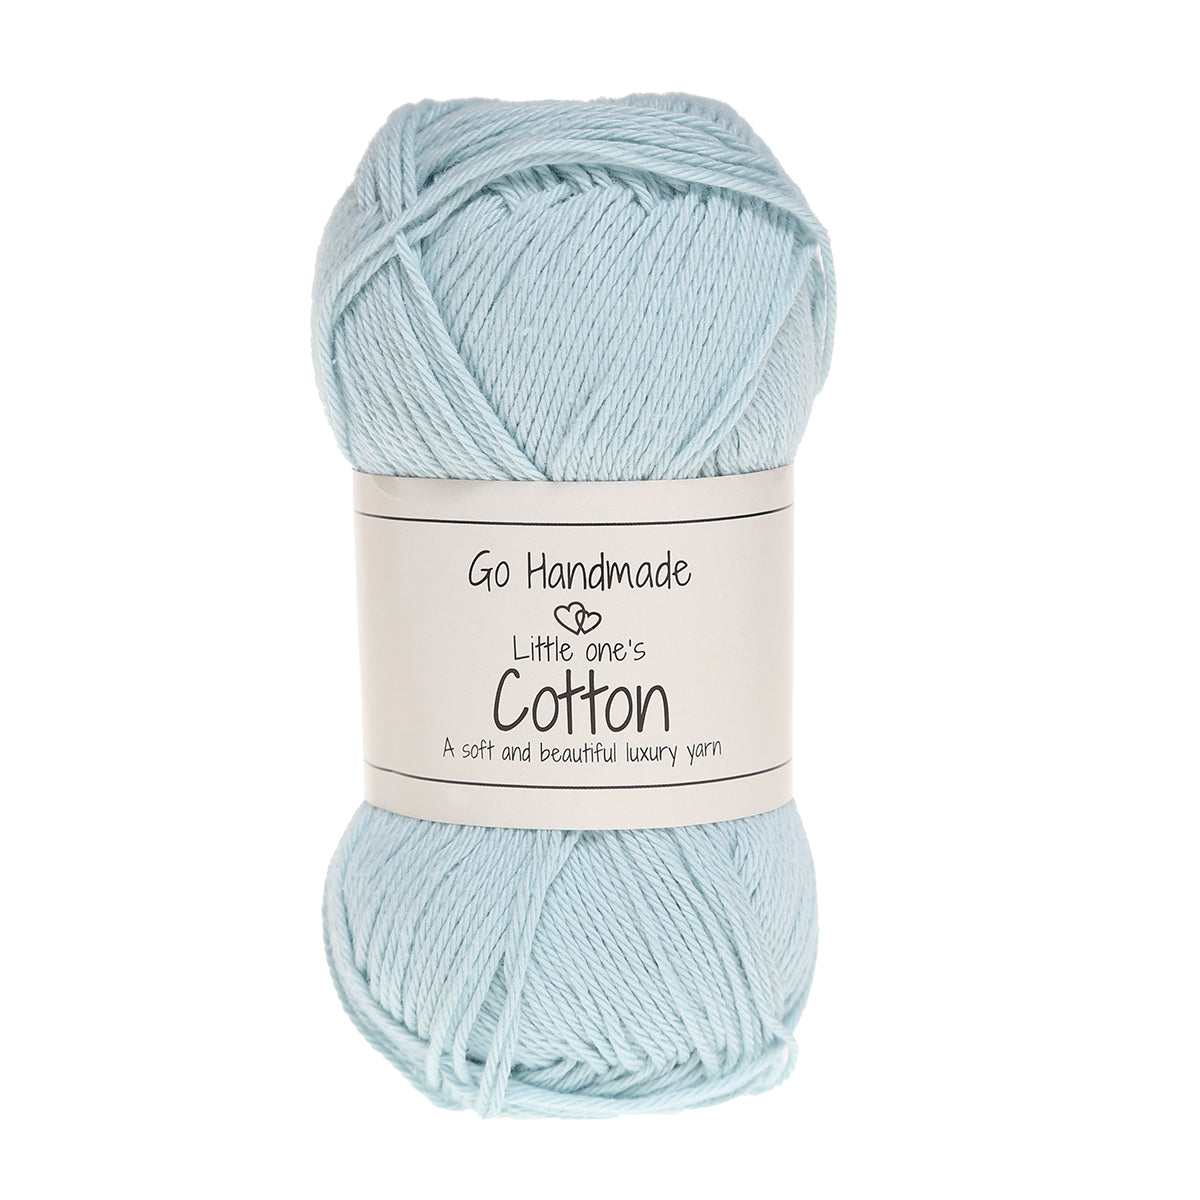 Go Handmade Little one's Cotton (himmelblå)